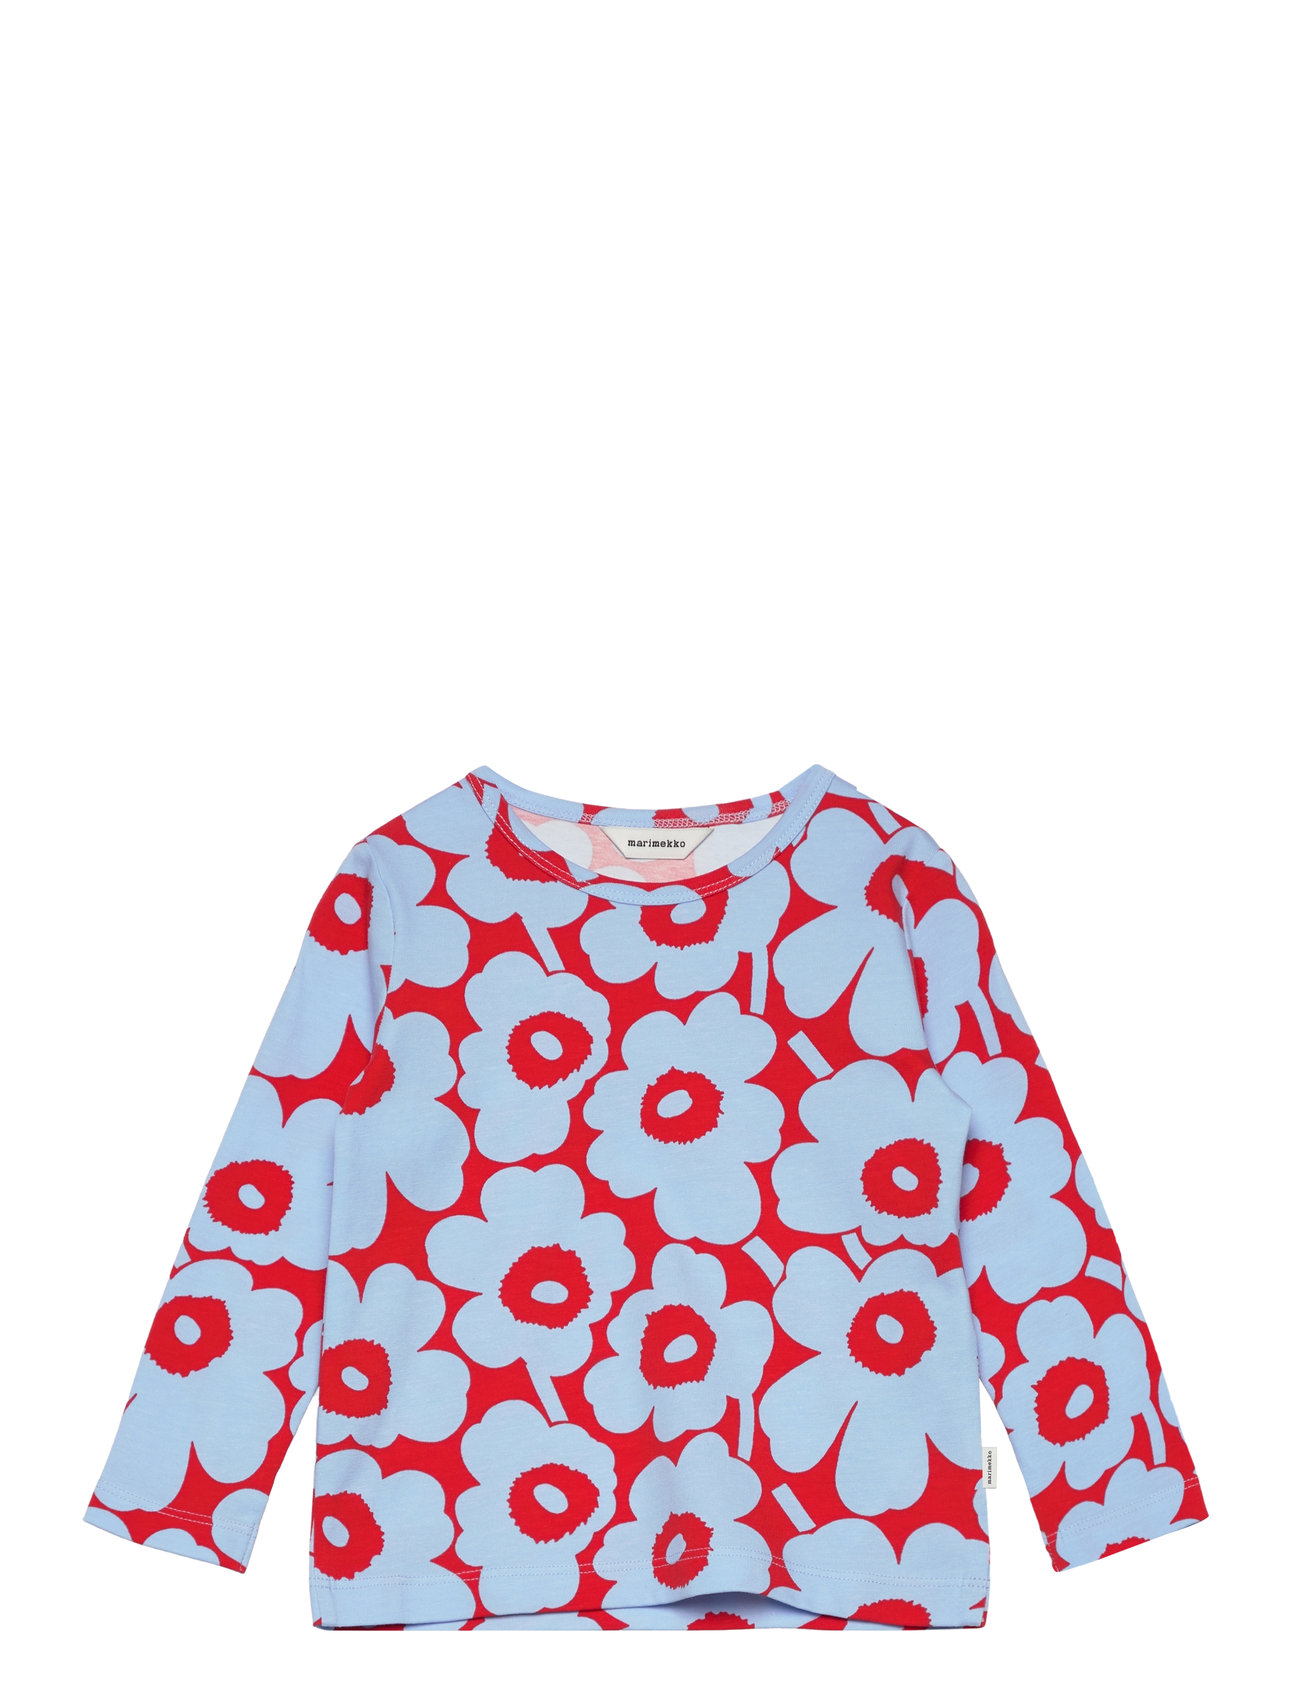 Ouli Mini Unikko I Tops T-shirts Long-sleeved T-shirts Multi/patterned Marimekko